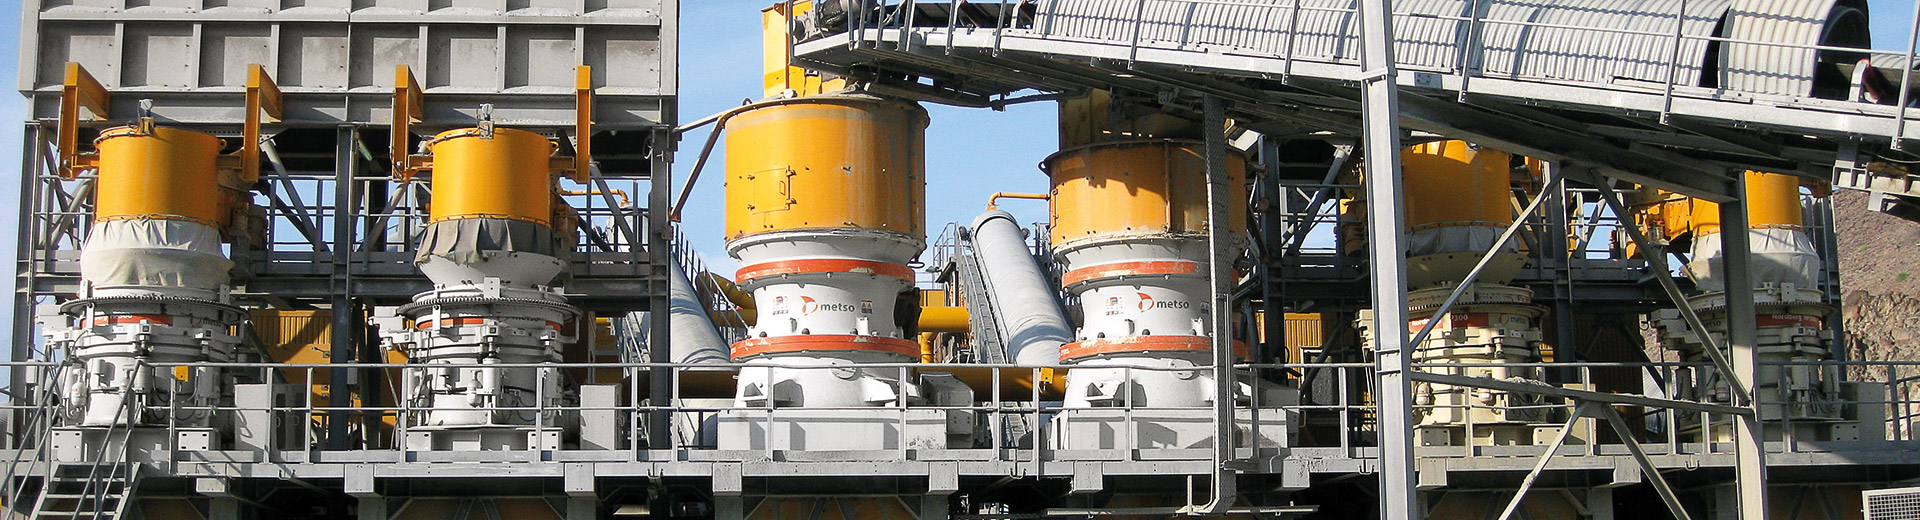 Les concasseurs à cône sont des matériels de concassage appréciés dans la production de granulats, l'exploitation minière et les applications de recyclage.